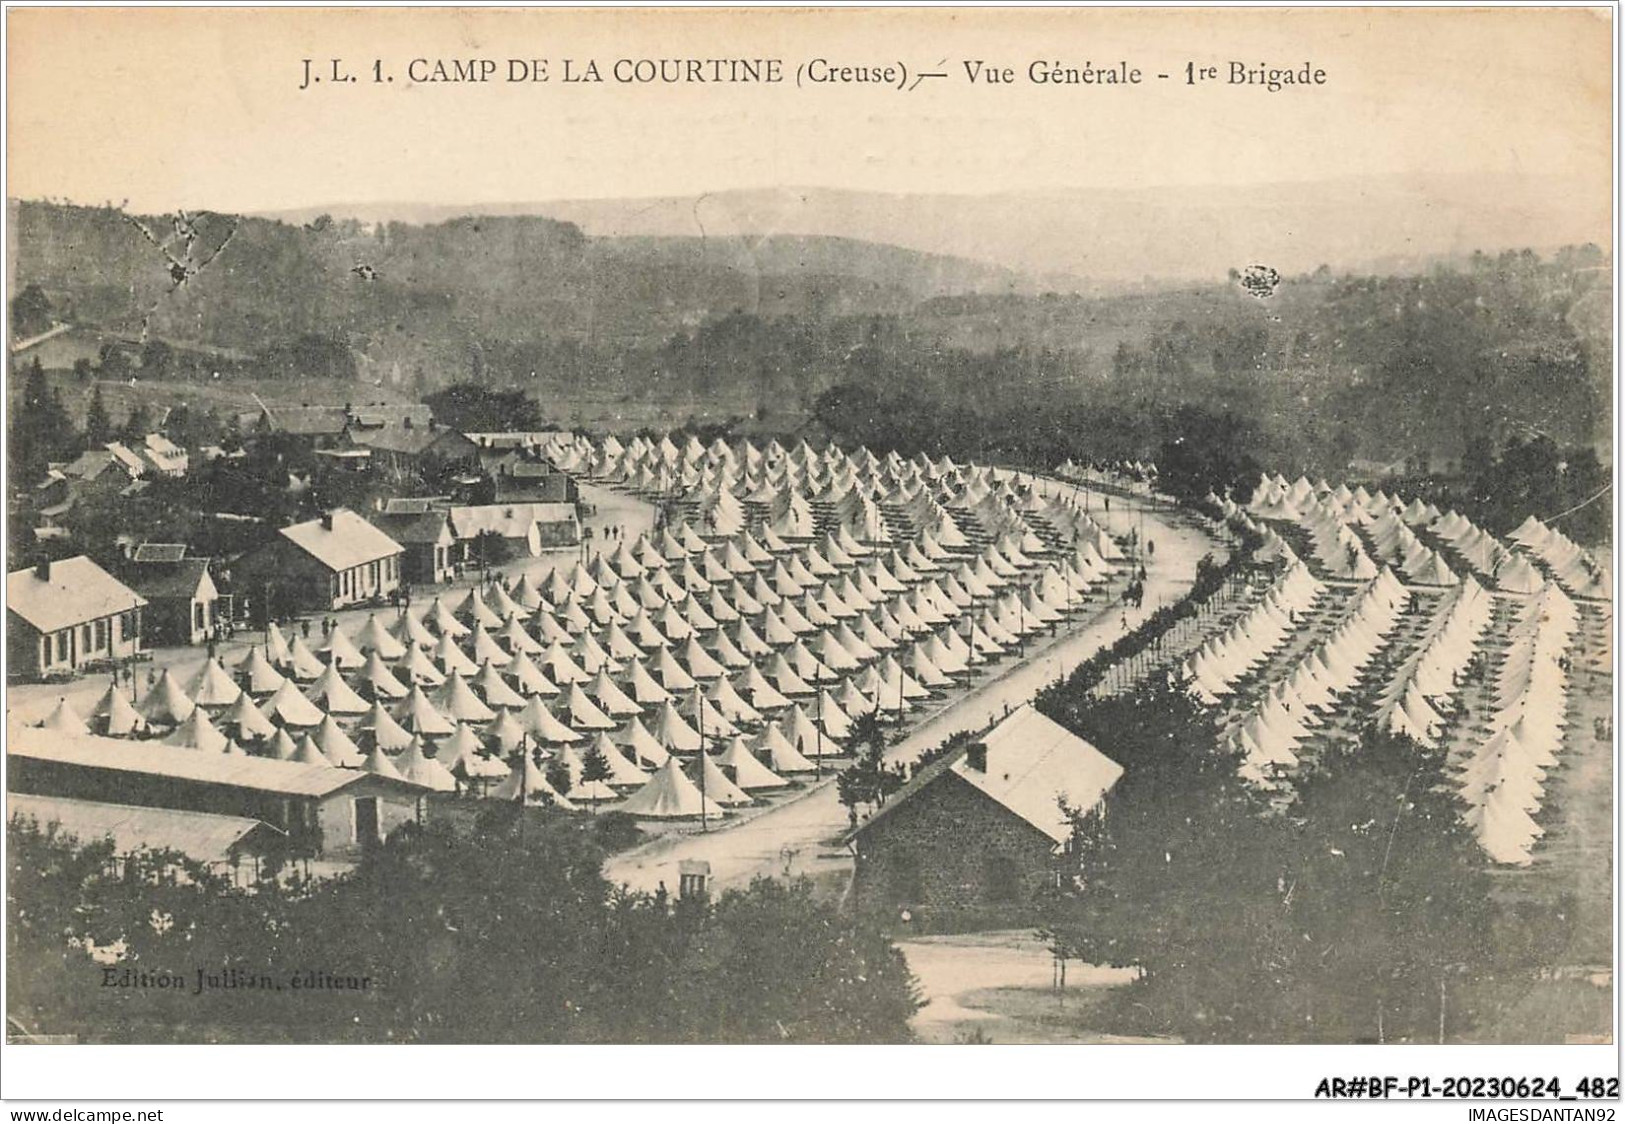 AR#BFP1-23-0242 - CAMP DE LA COURTINE - Vue Générale - 1ère Brigade - La Courtine